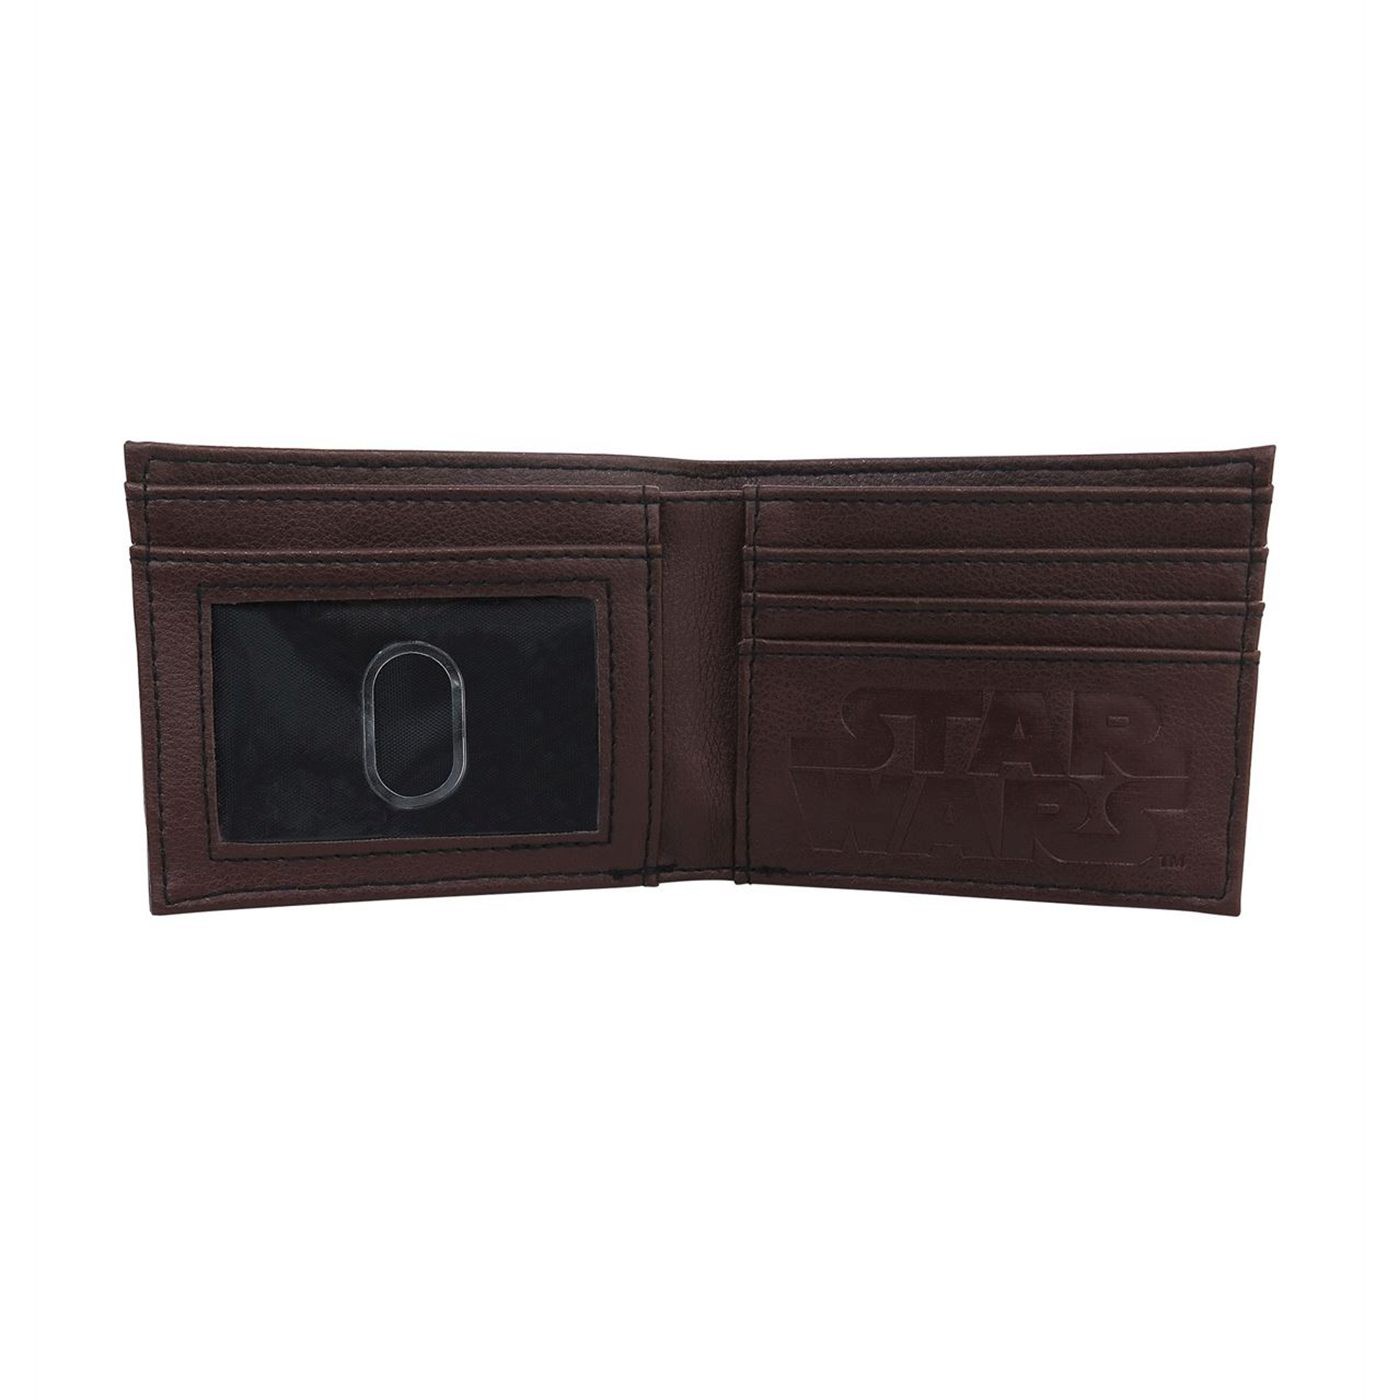 Star Wars Han Solo Suit Up Bi-Fold Wallet